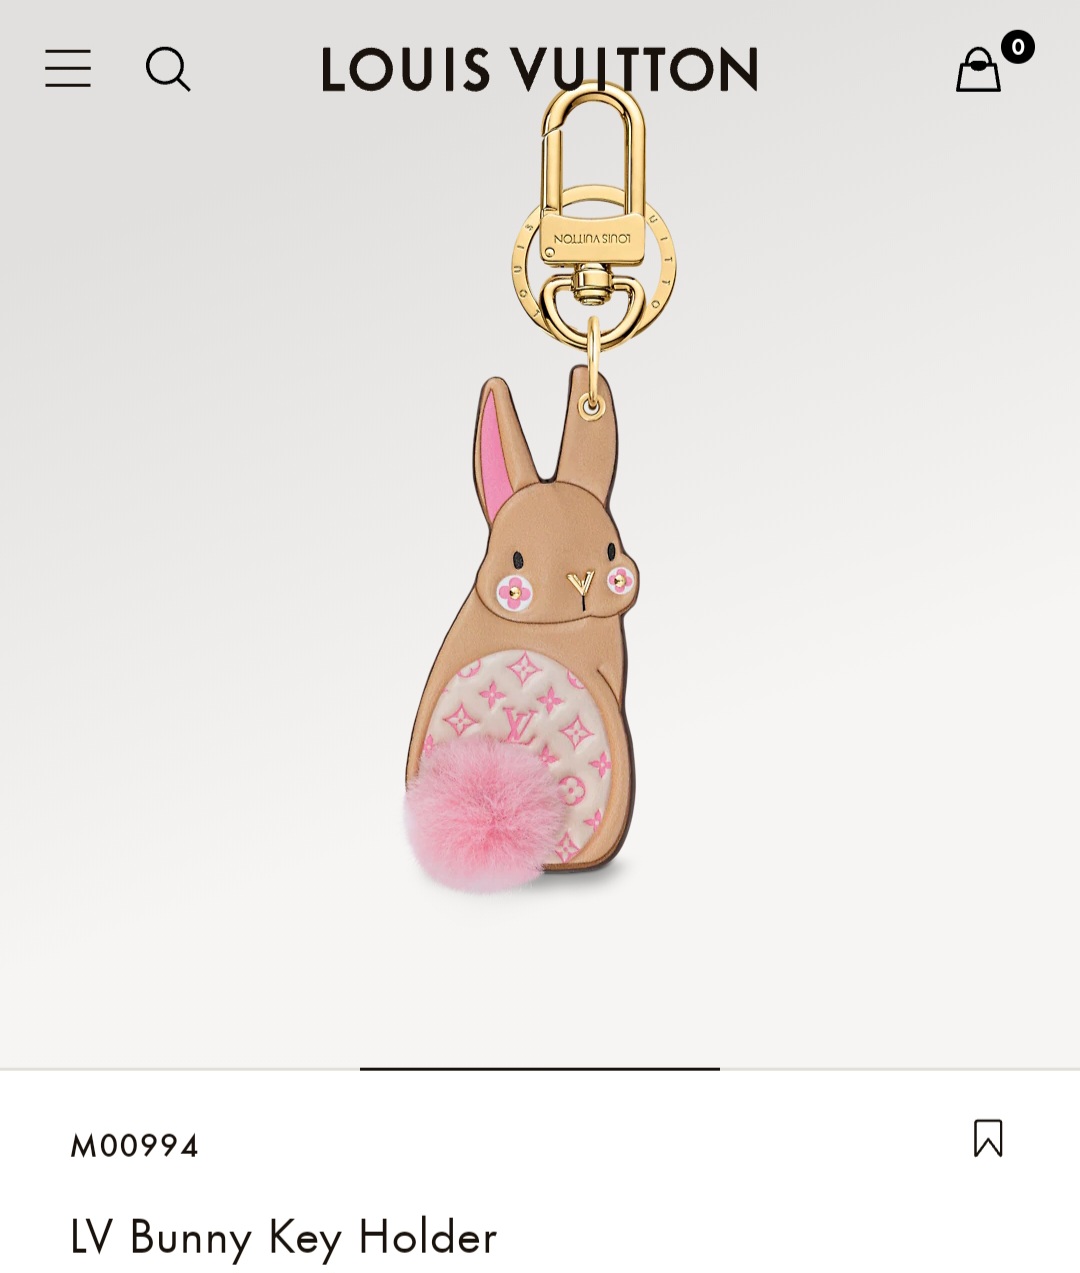 LV Bunny Key Holder keychain